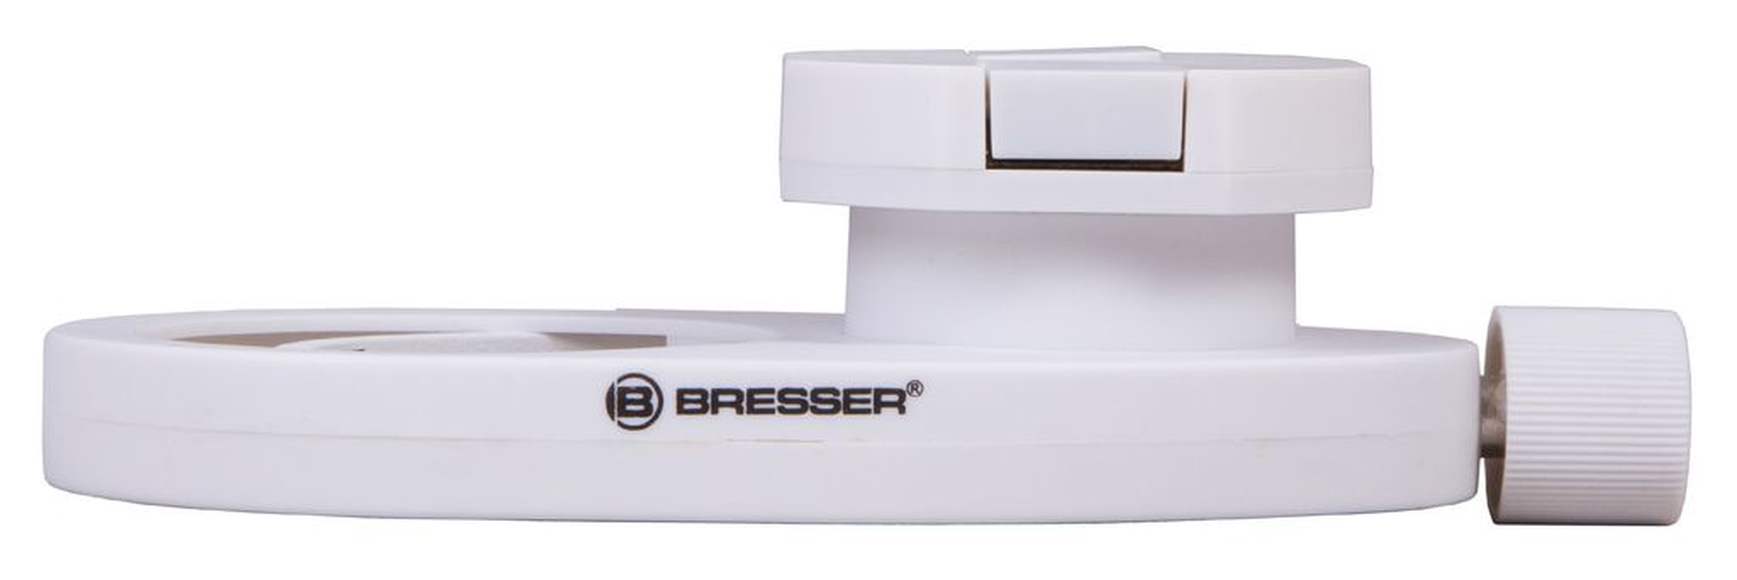 Адаптер для смартфона Bresser